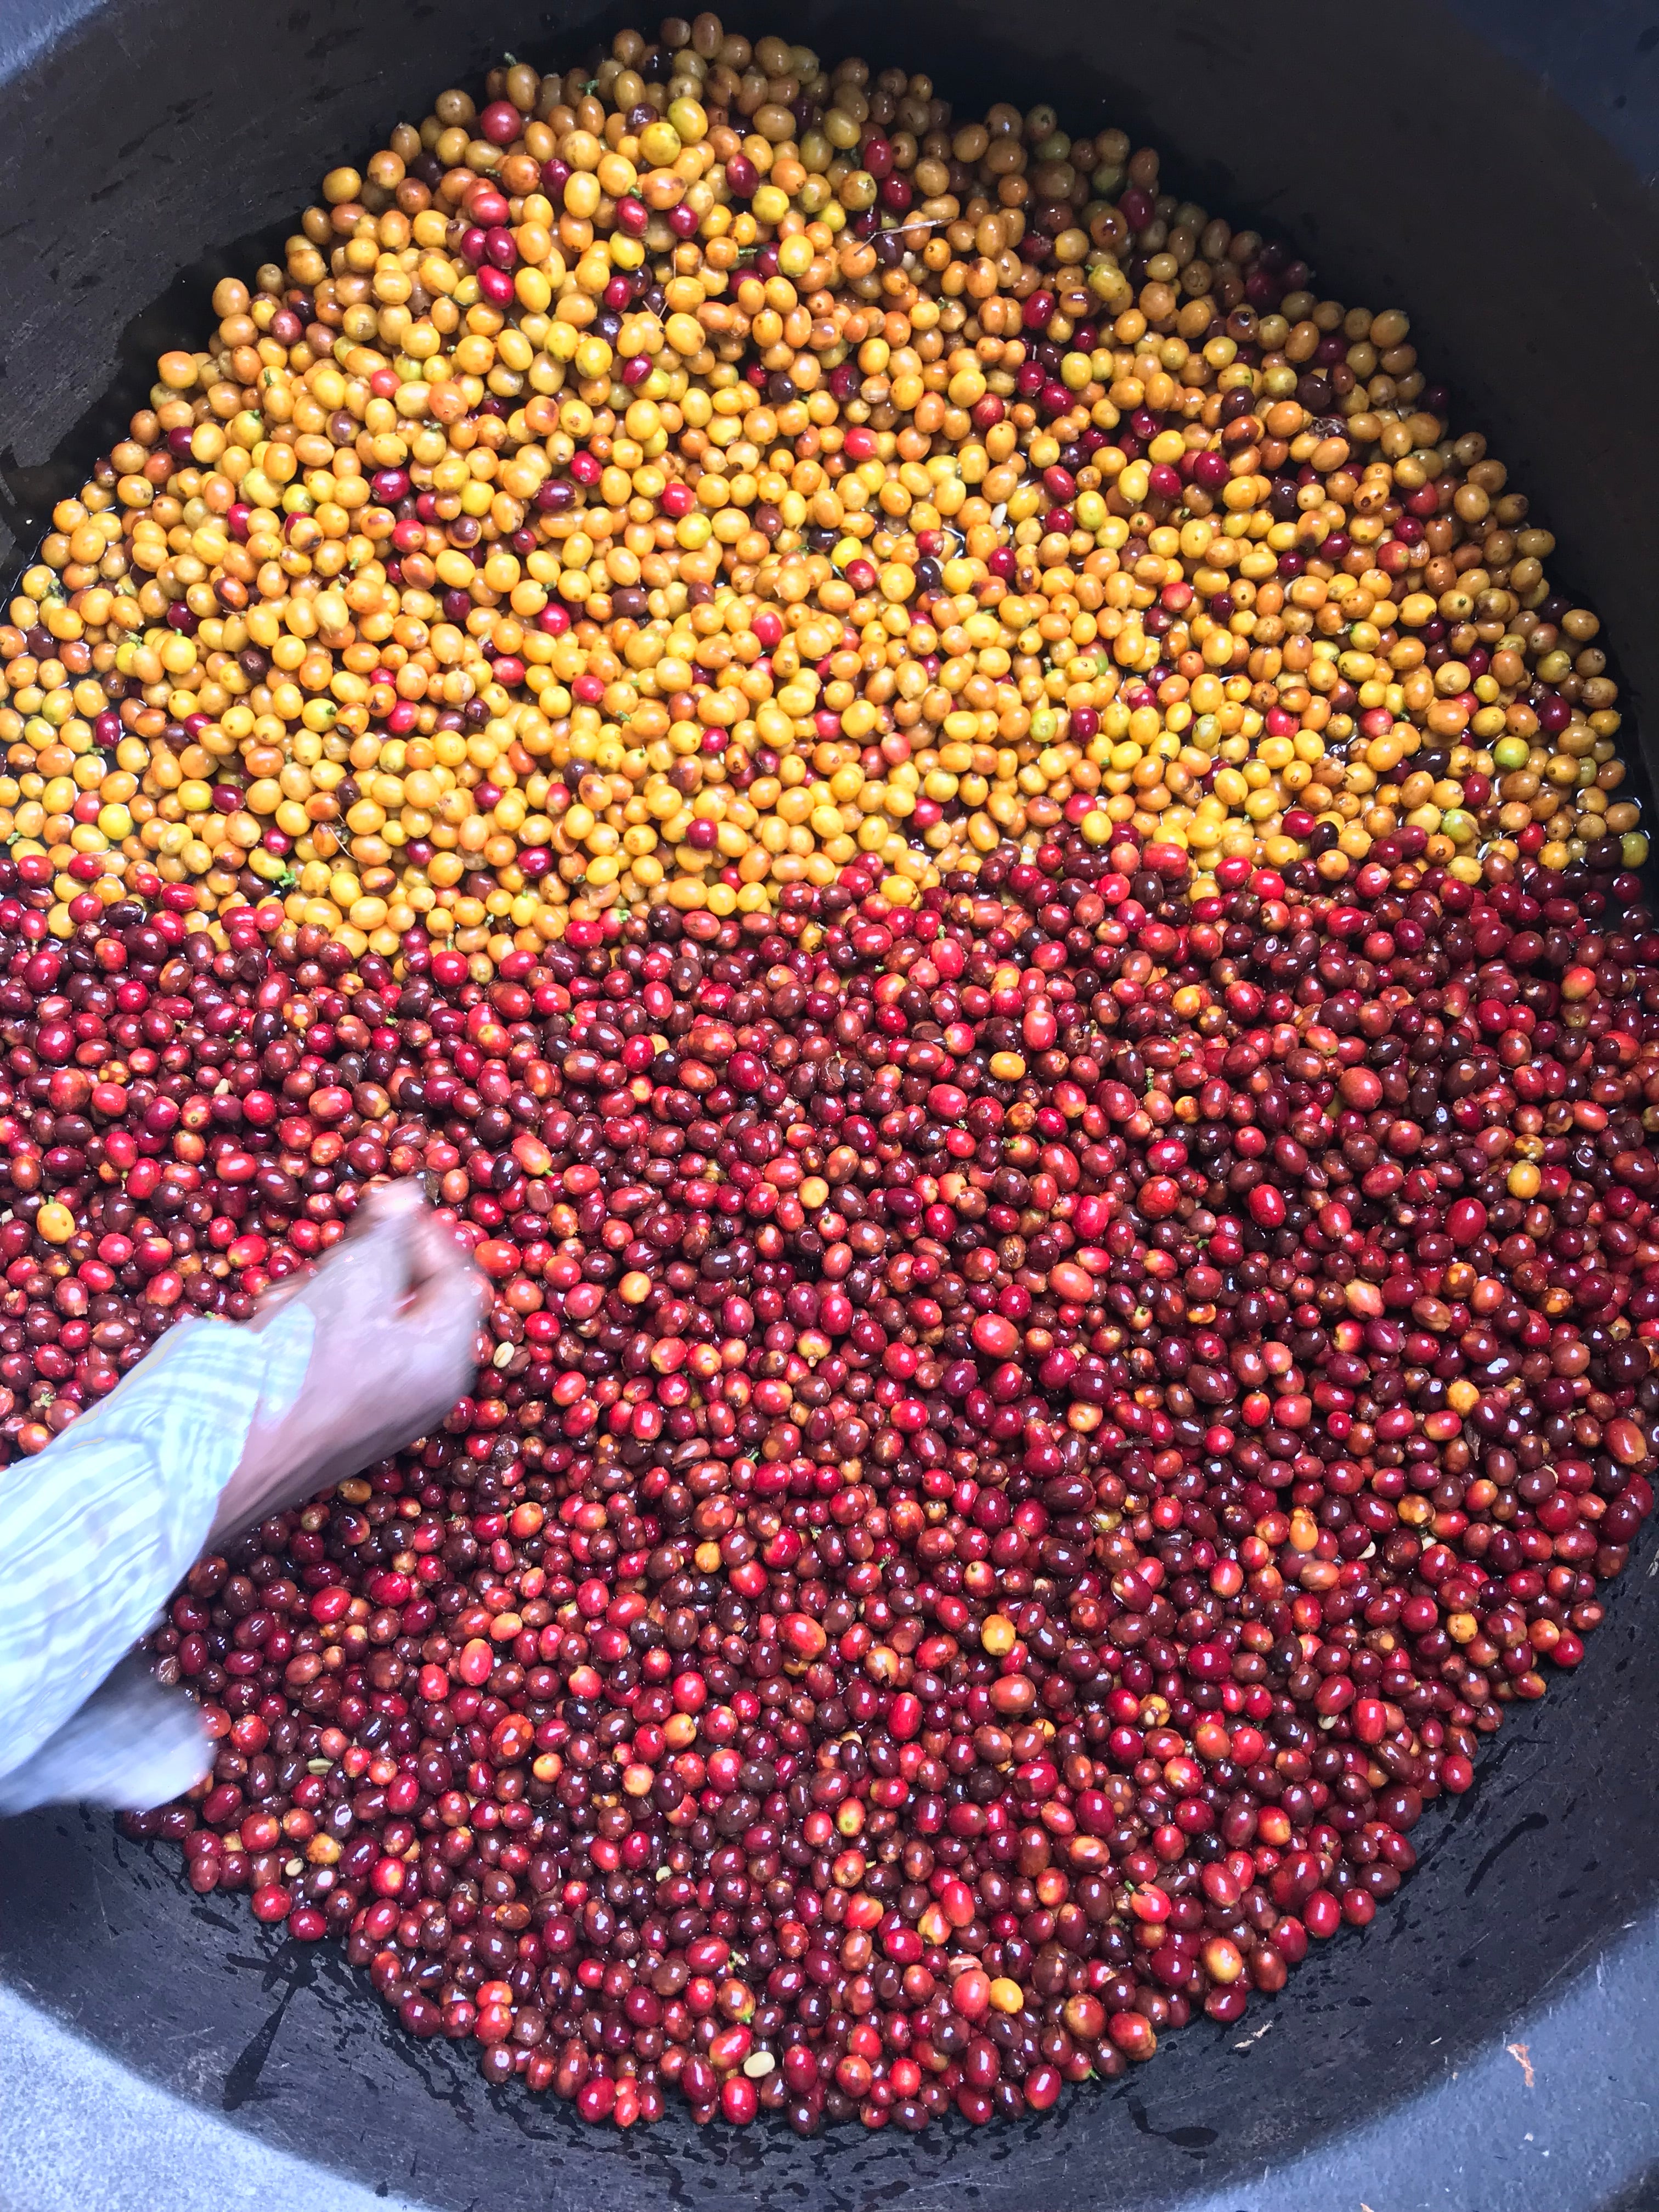 Cerezas de café amarillas y rojas recién recolectadas en Colombia, finca el placer 